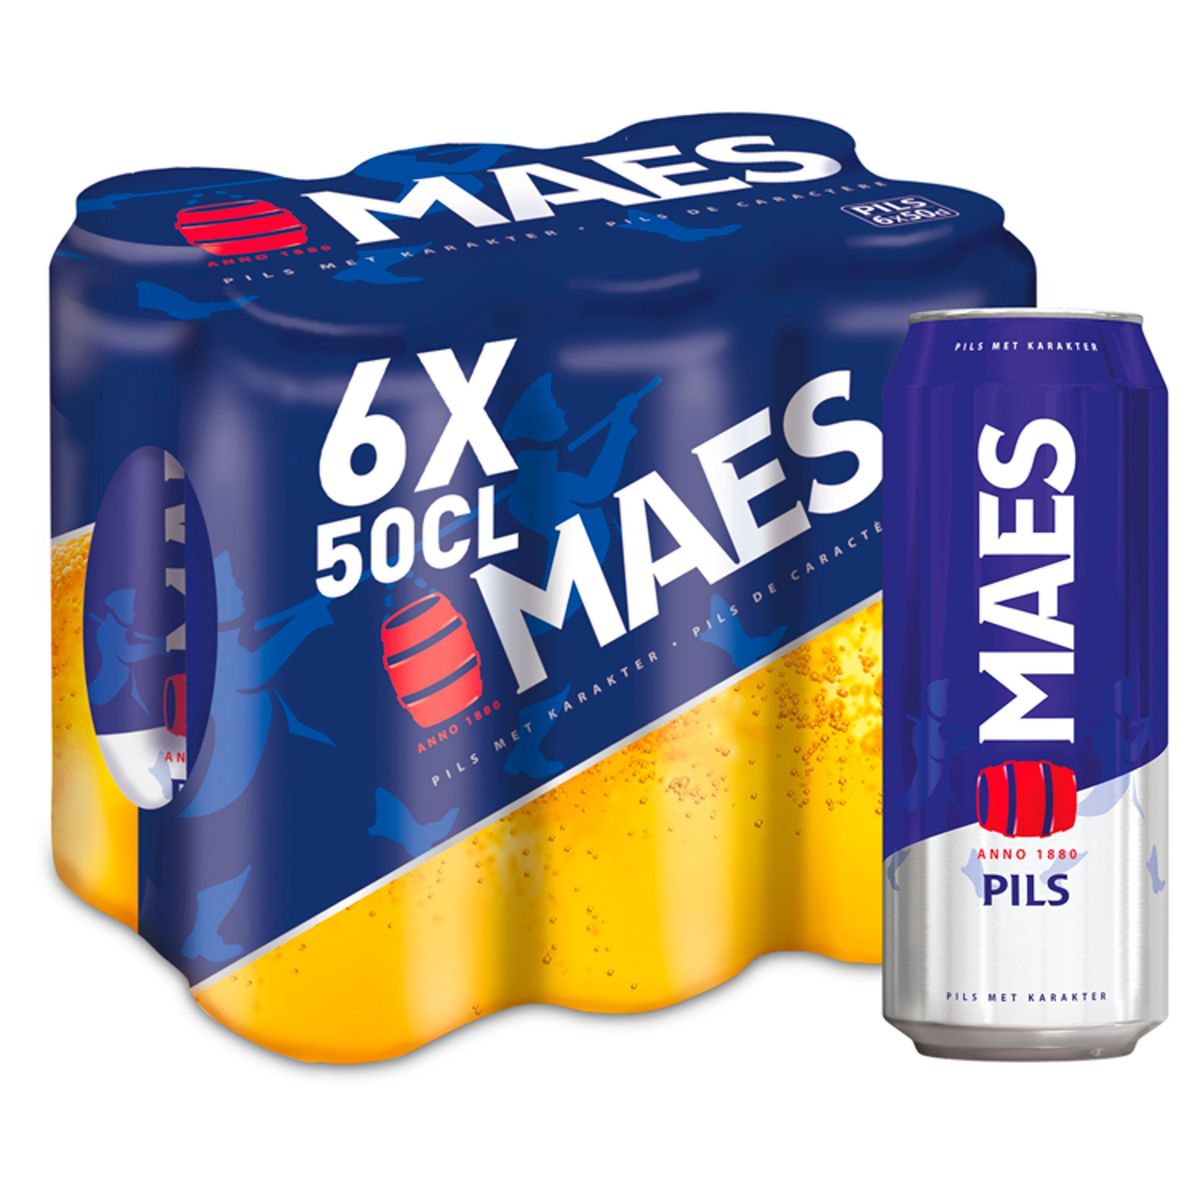 Maes Blond bier Pils 5.2% ALC 6 x 50 cl Blik